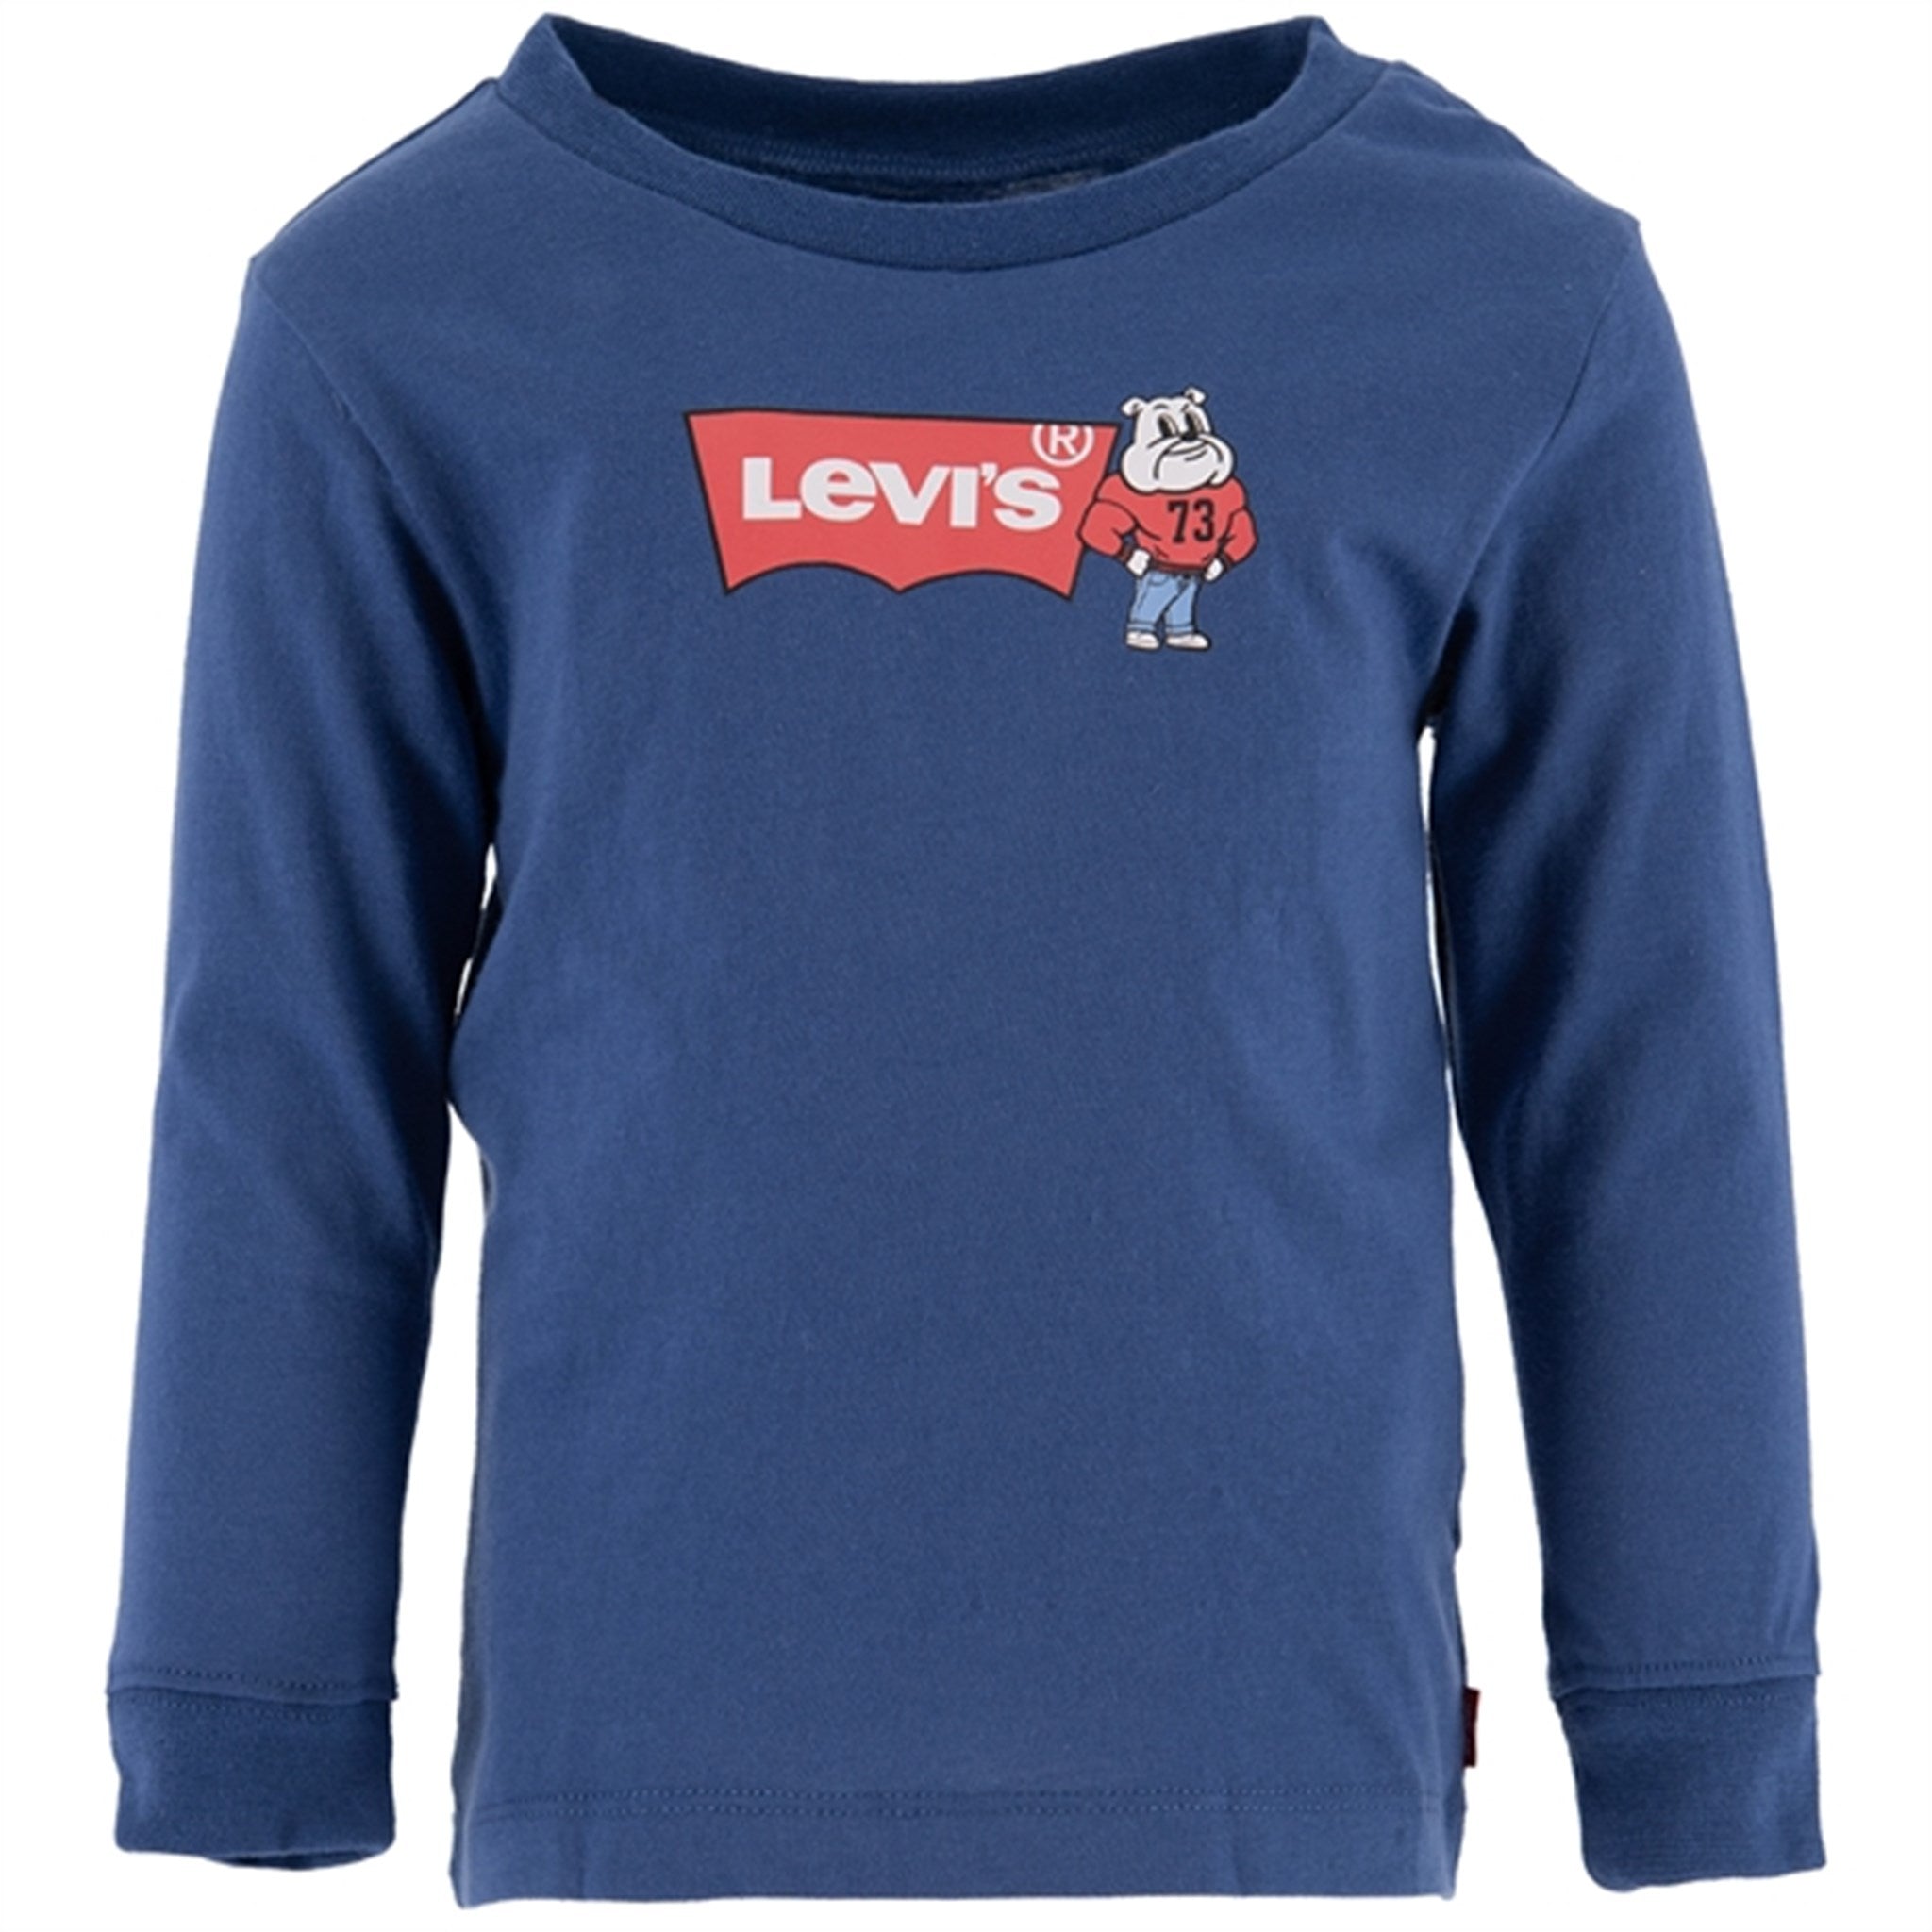 Levi's Mascot Batwing Crewneck T-shirt Blue